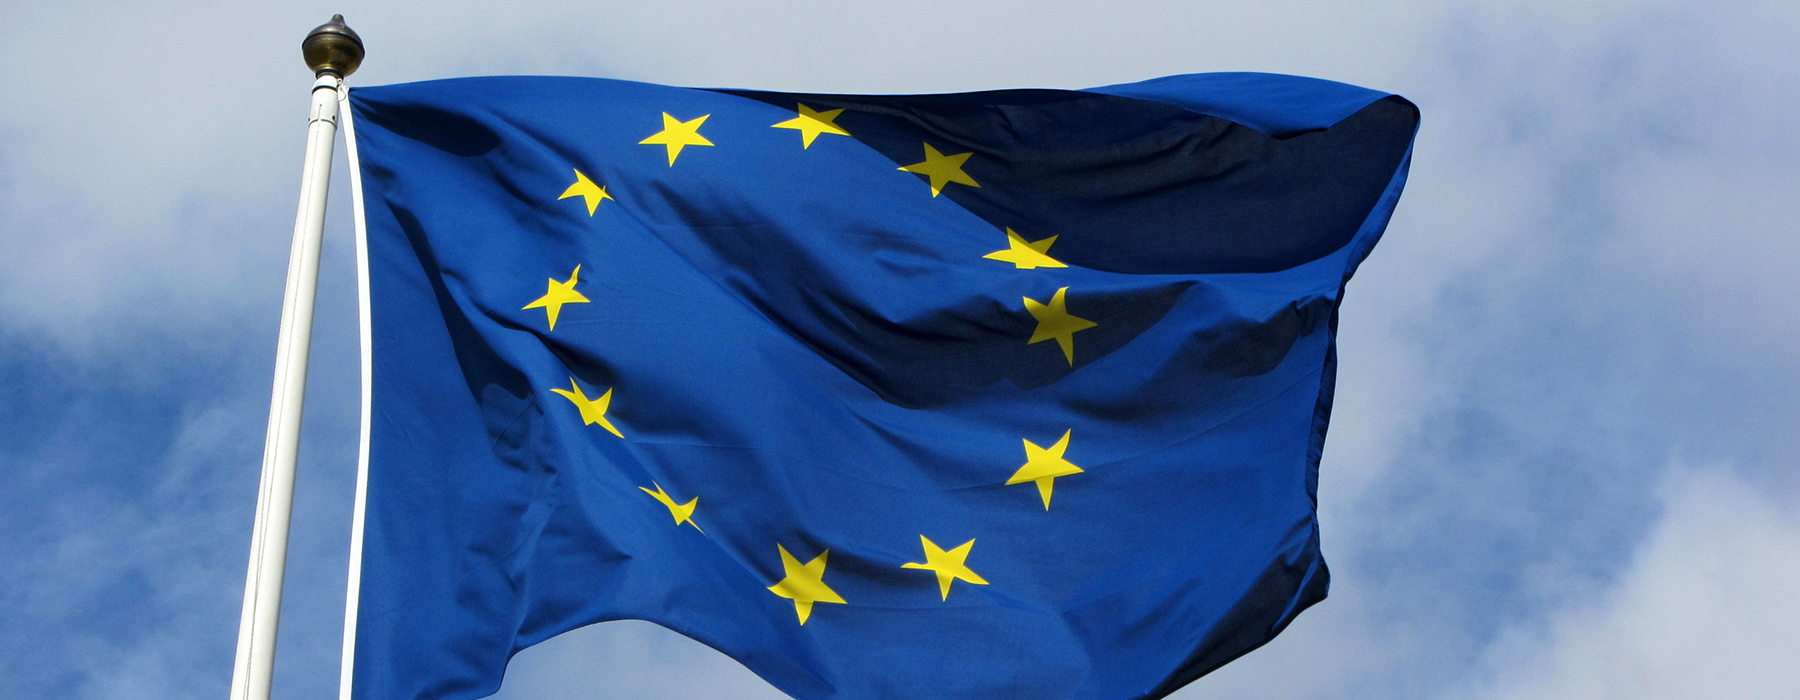 Bandiera dell'Europa sventola con sullo sfondo cielo e nuvole